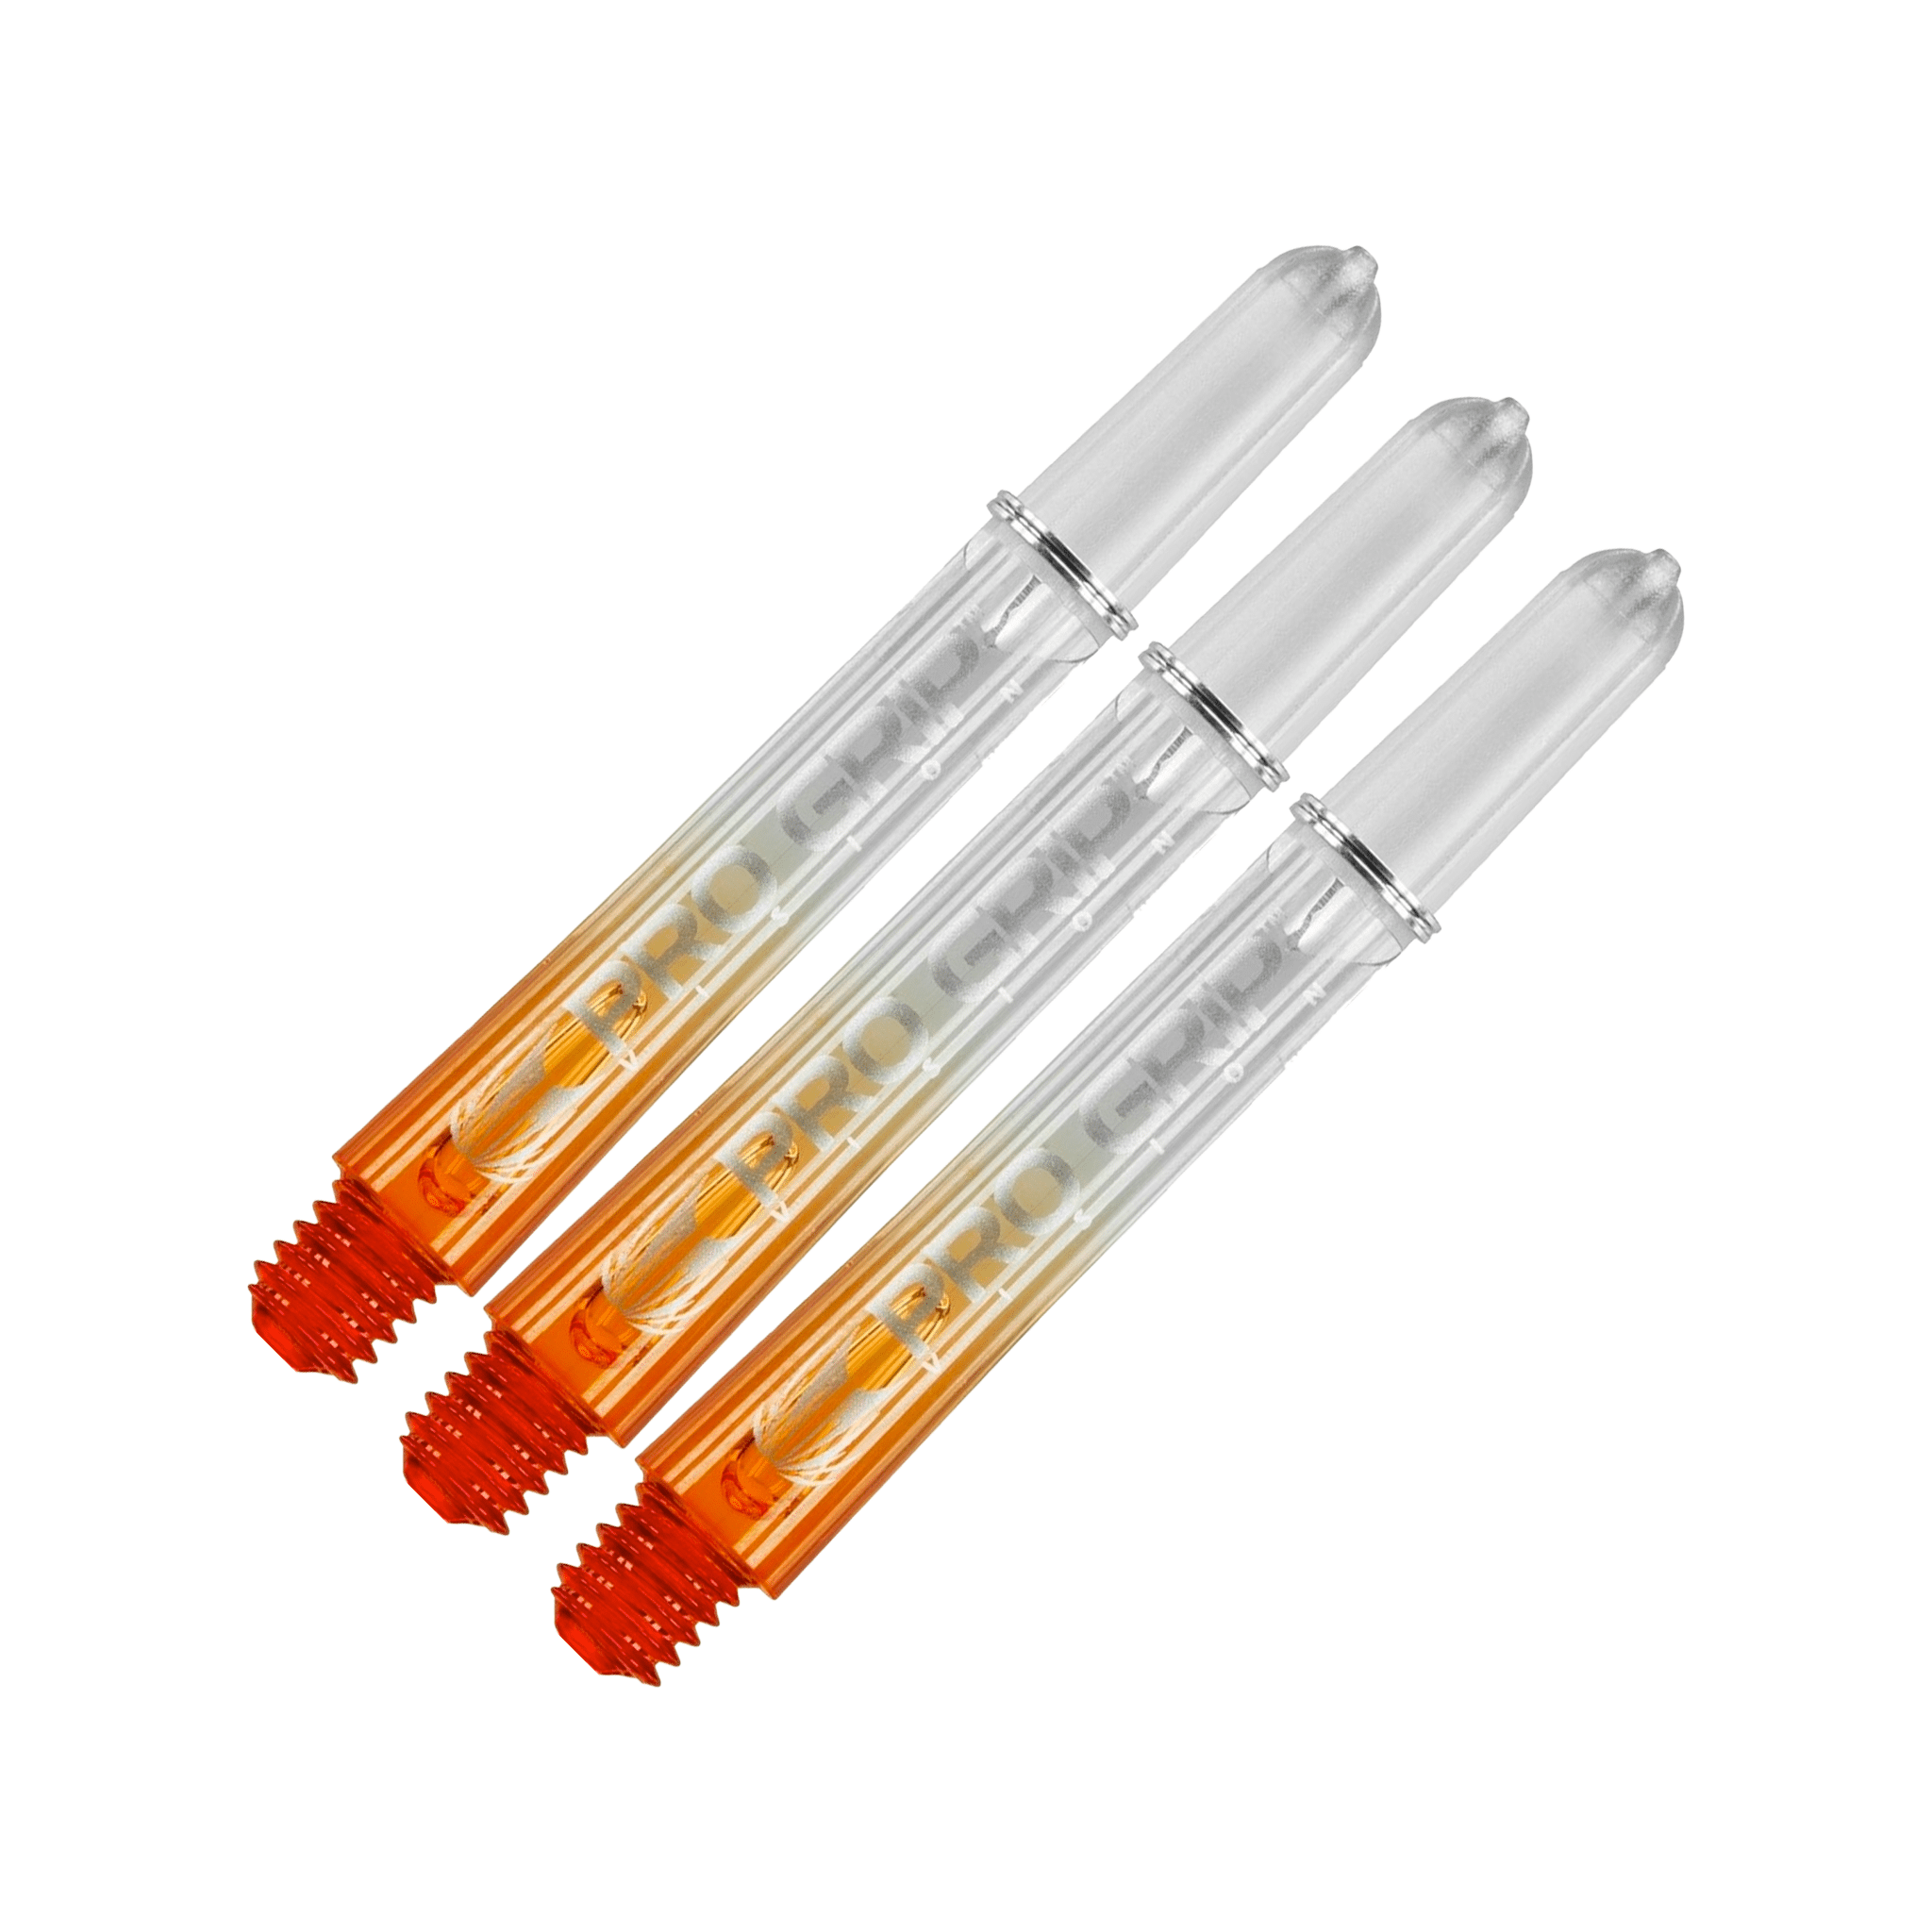 Target Pro Vision - Polycarbonate Dart Shafts Intermediate (41mm) / Orange Shafts